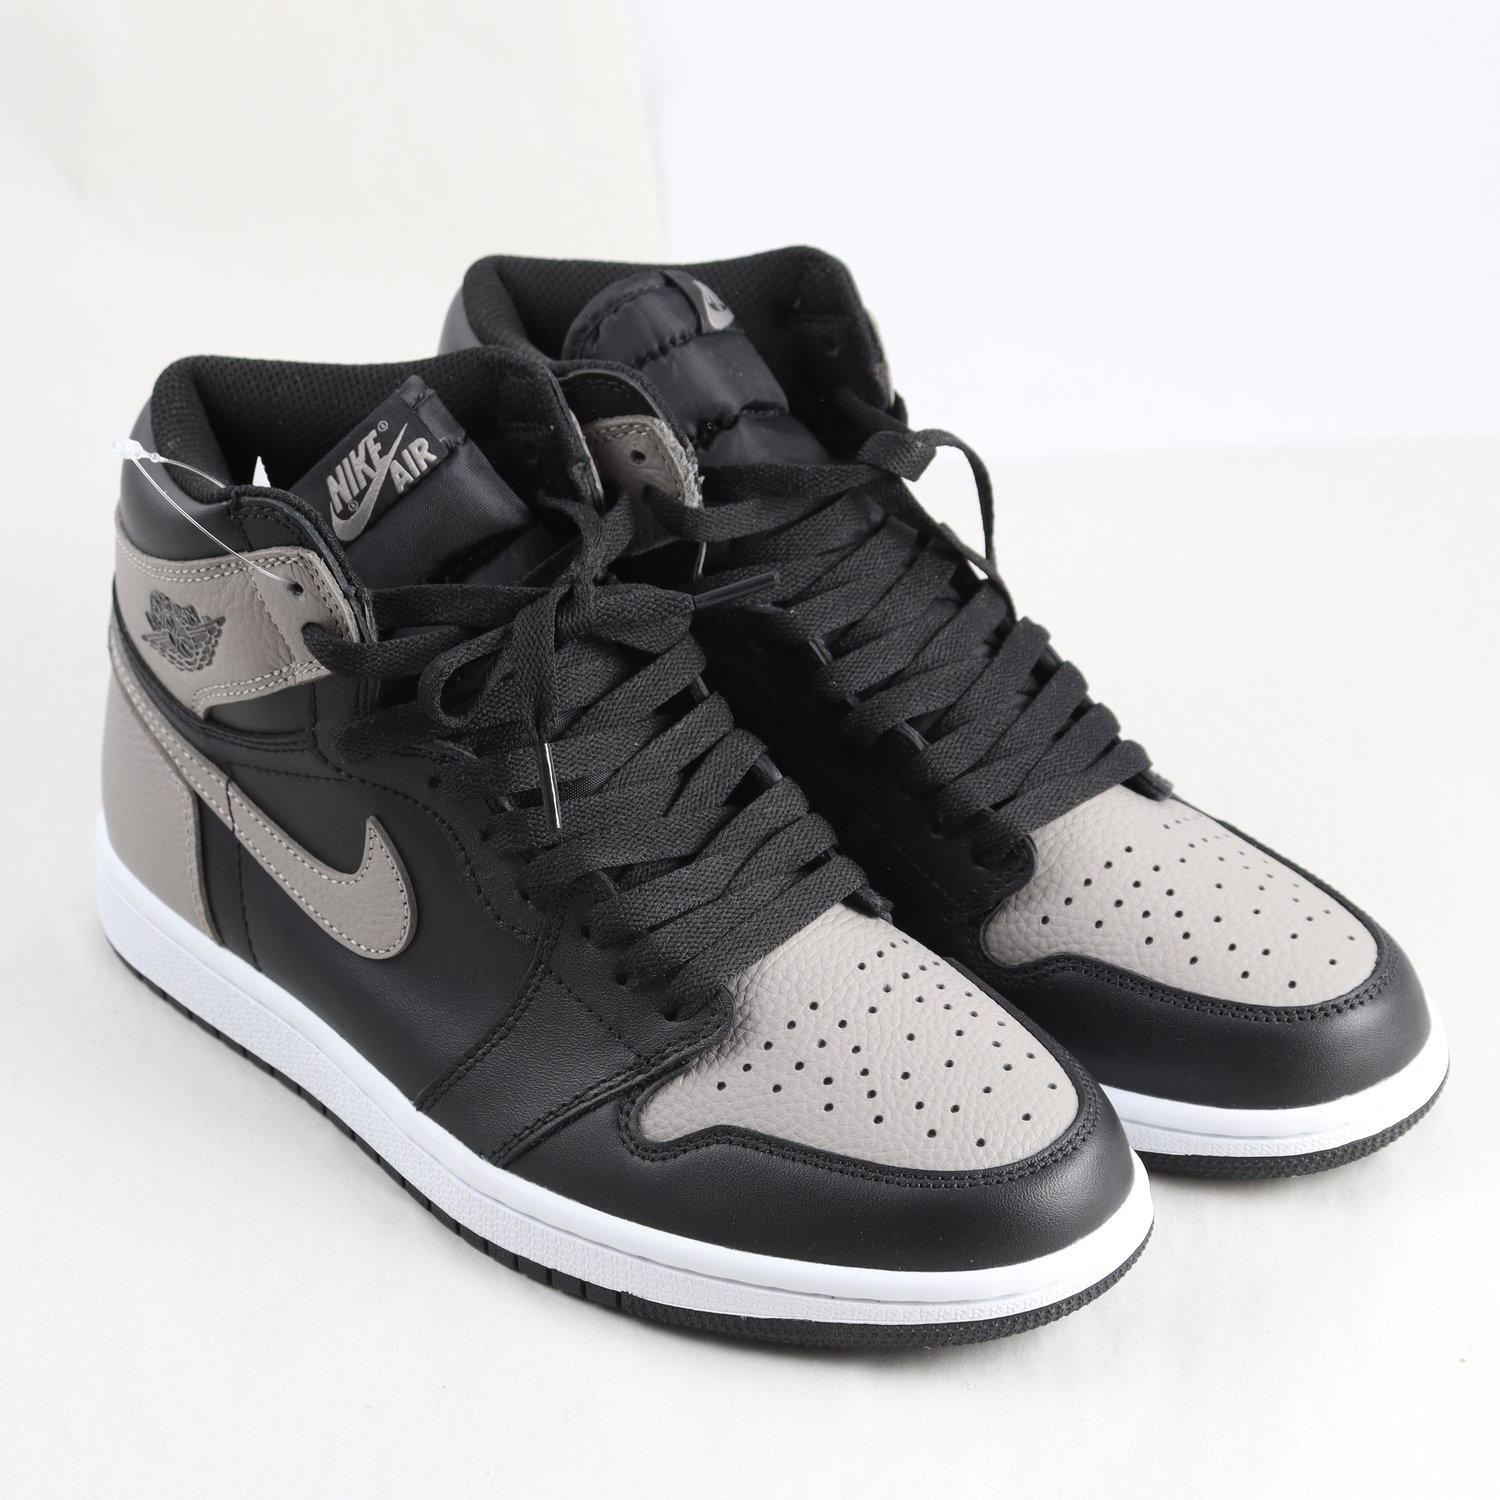 Sneakers, Nike Air Jordan Shadow, grå/svart, stl. 42.5